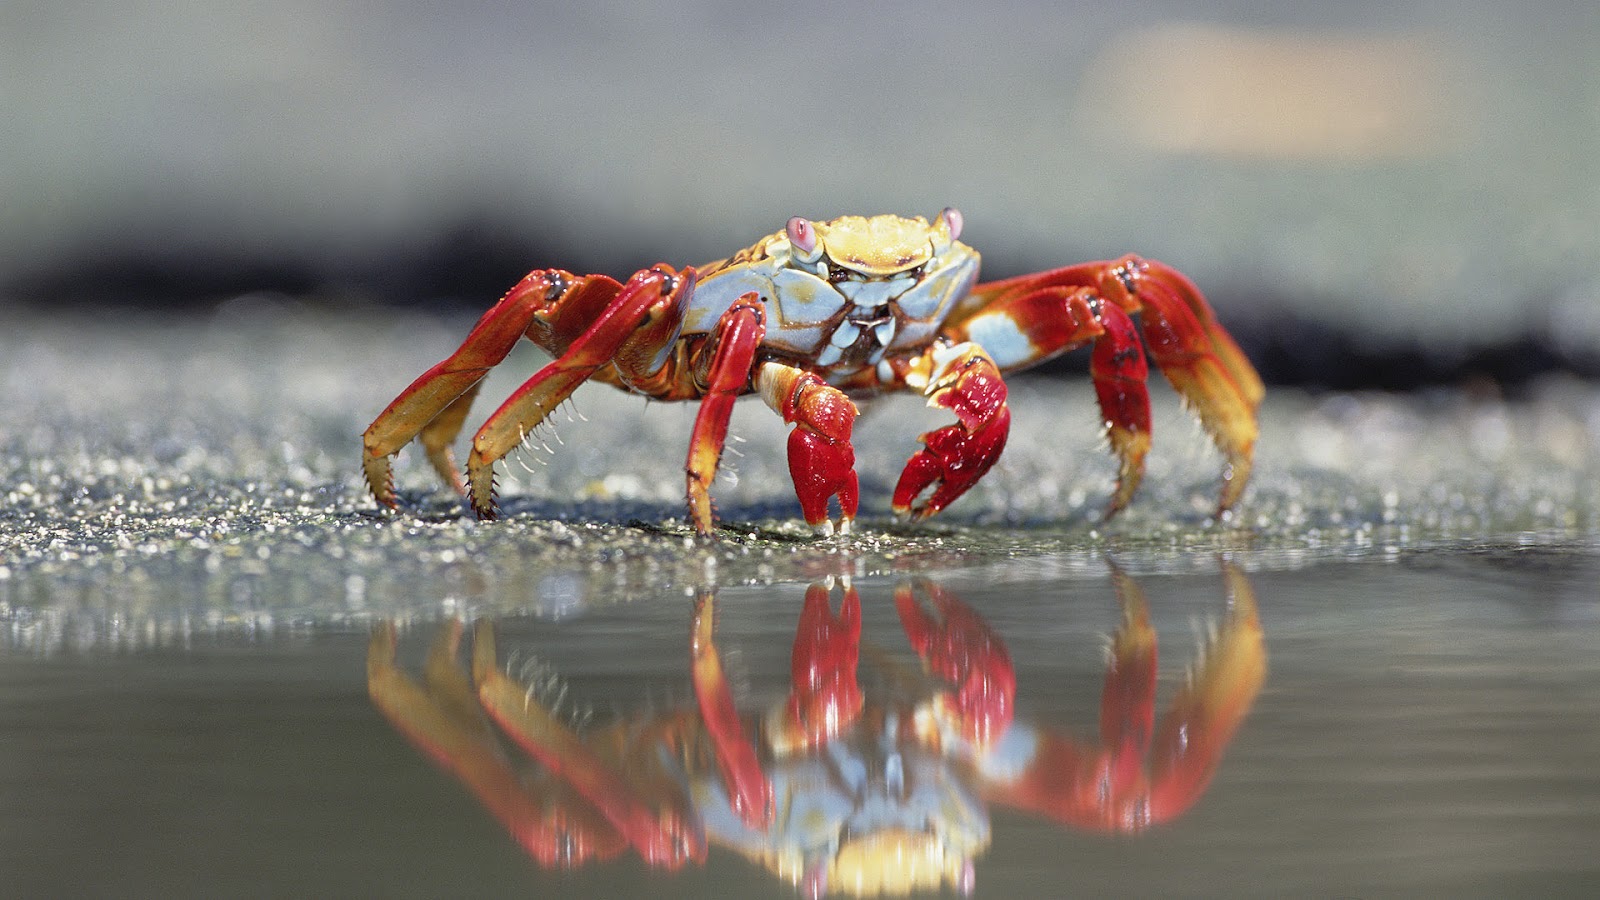 Hd Wallpaper Of Crabs - HD Wallpaper 